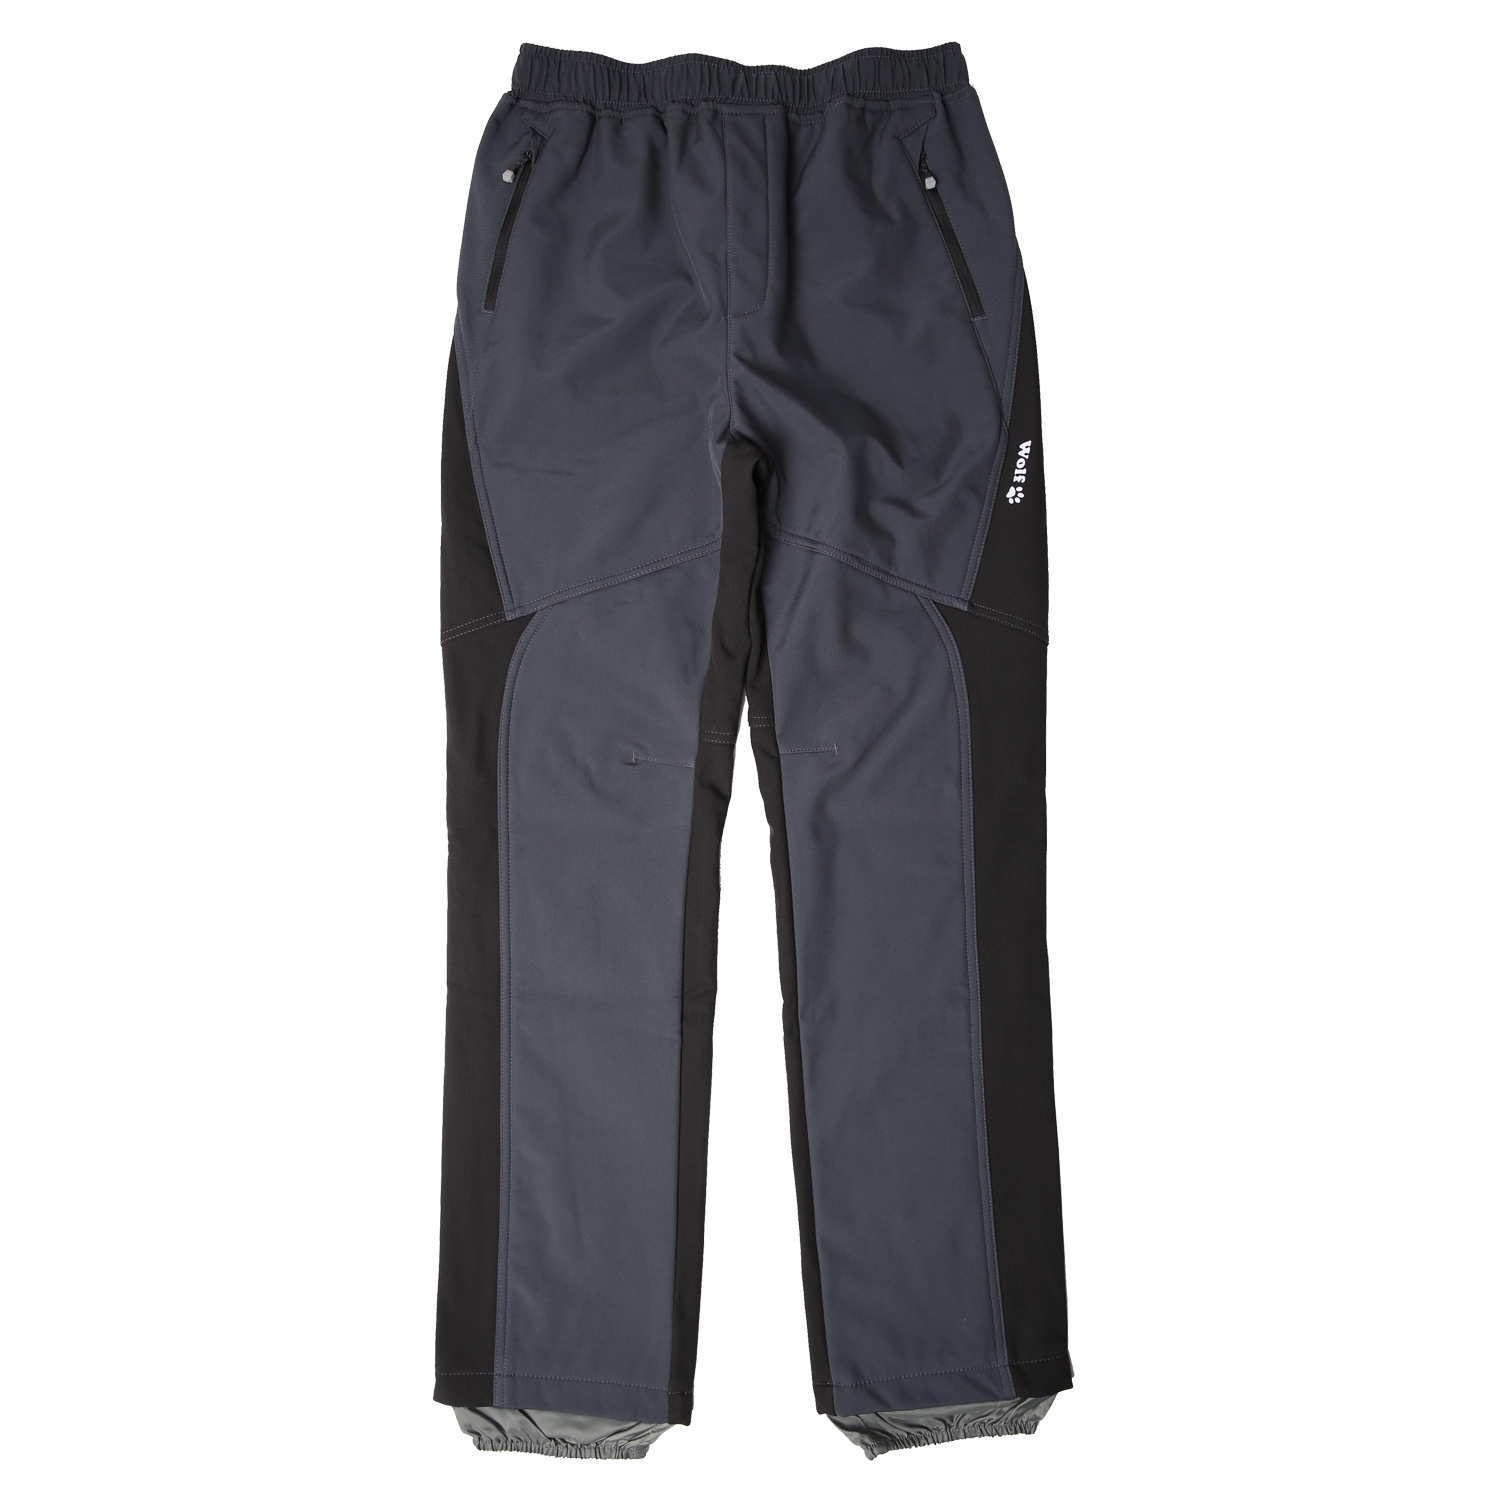 Chlapecké softshellové kalhoty, zateplené - Wolf B2298, šedá Barva: Šedá, Velikost: 164